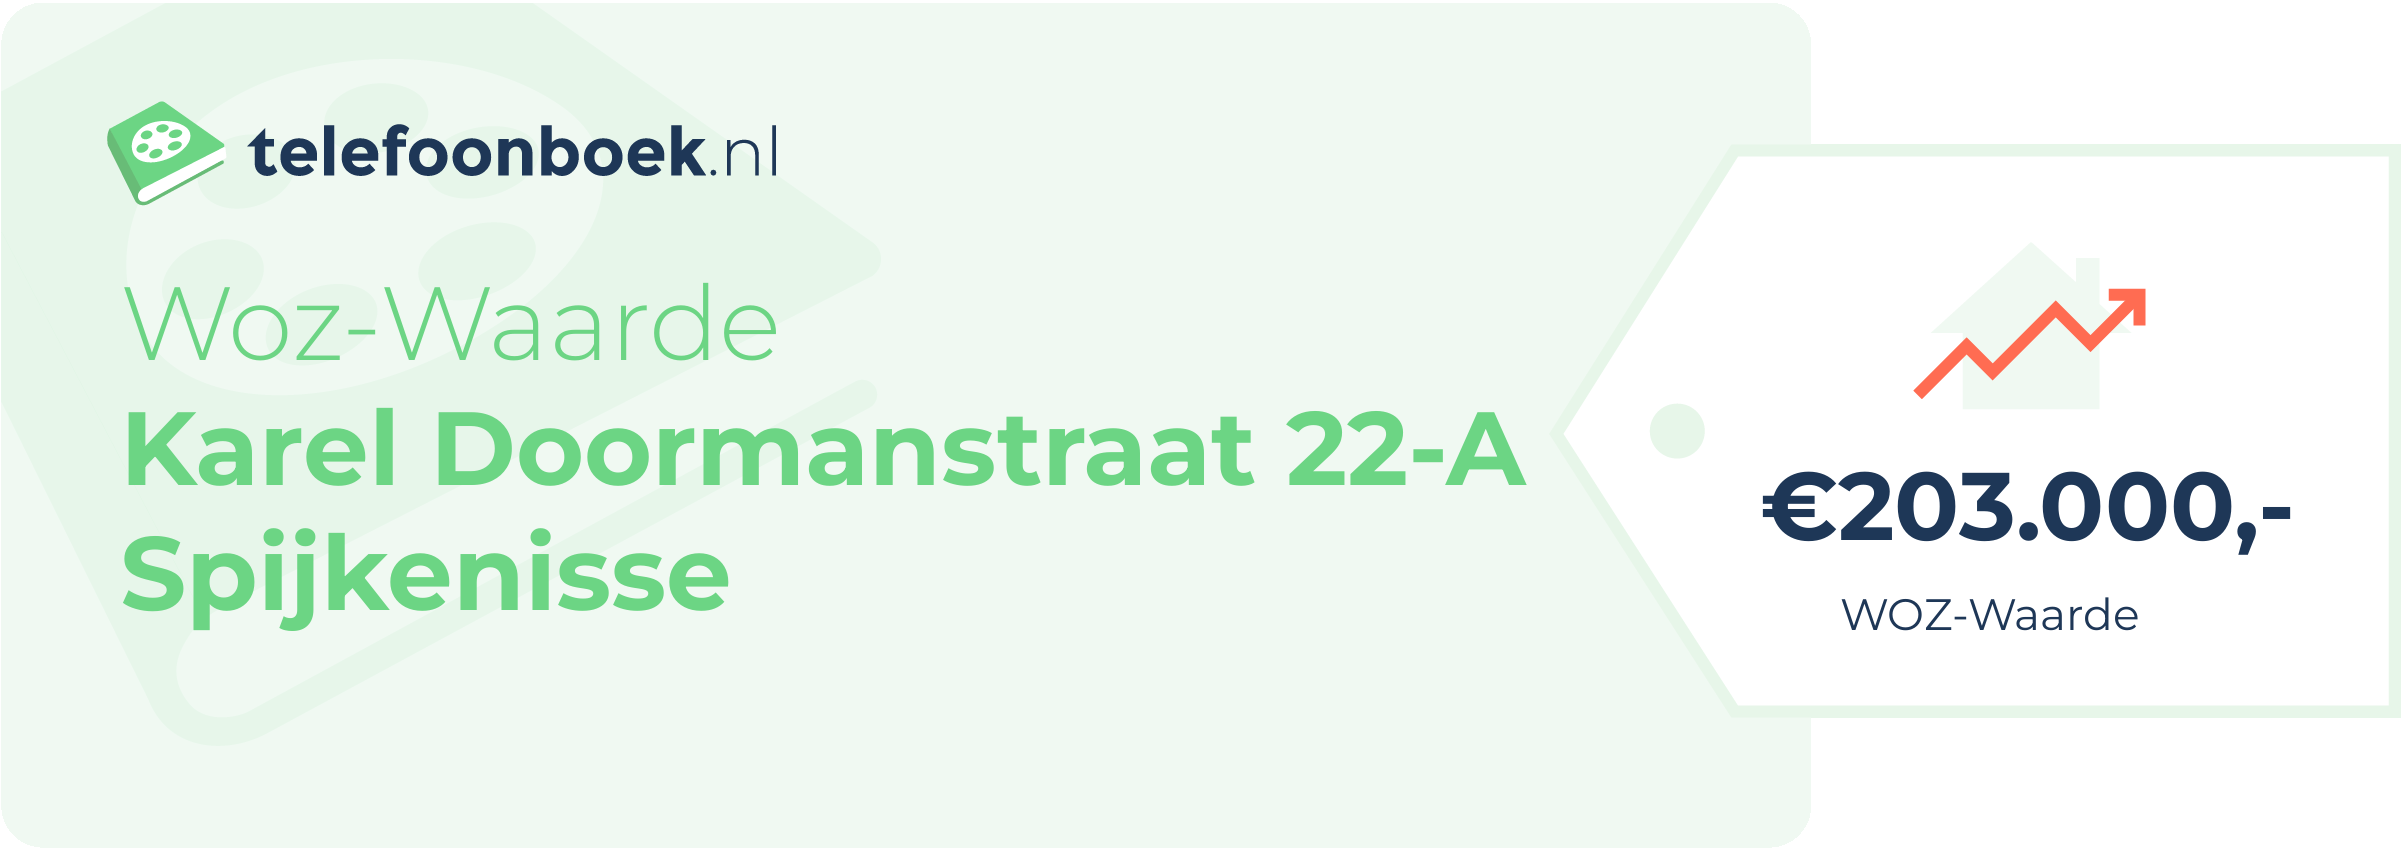 WOZ-waarde Karel Doormanstraat 22-A Spijkenisse